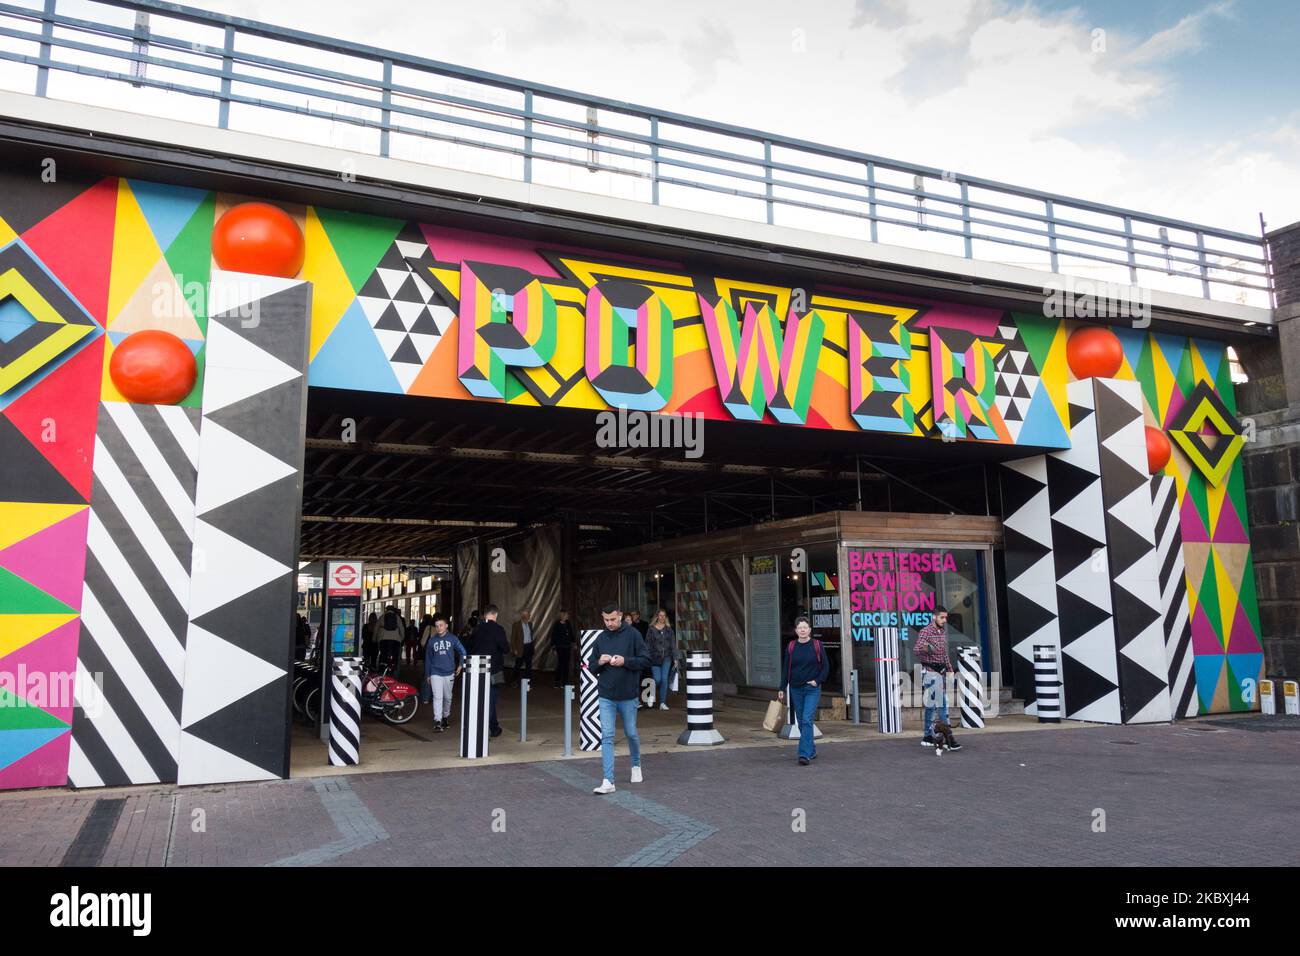 La nouvelle entrée de puissance colorée au Circus West Village à la station électrique de Battersea par Morag Myerscough, Battersea, Londres, Angleterre, Royaume-Uni Banque D'Images